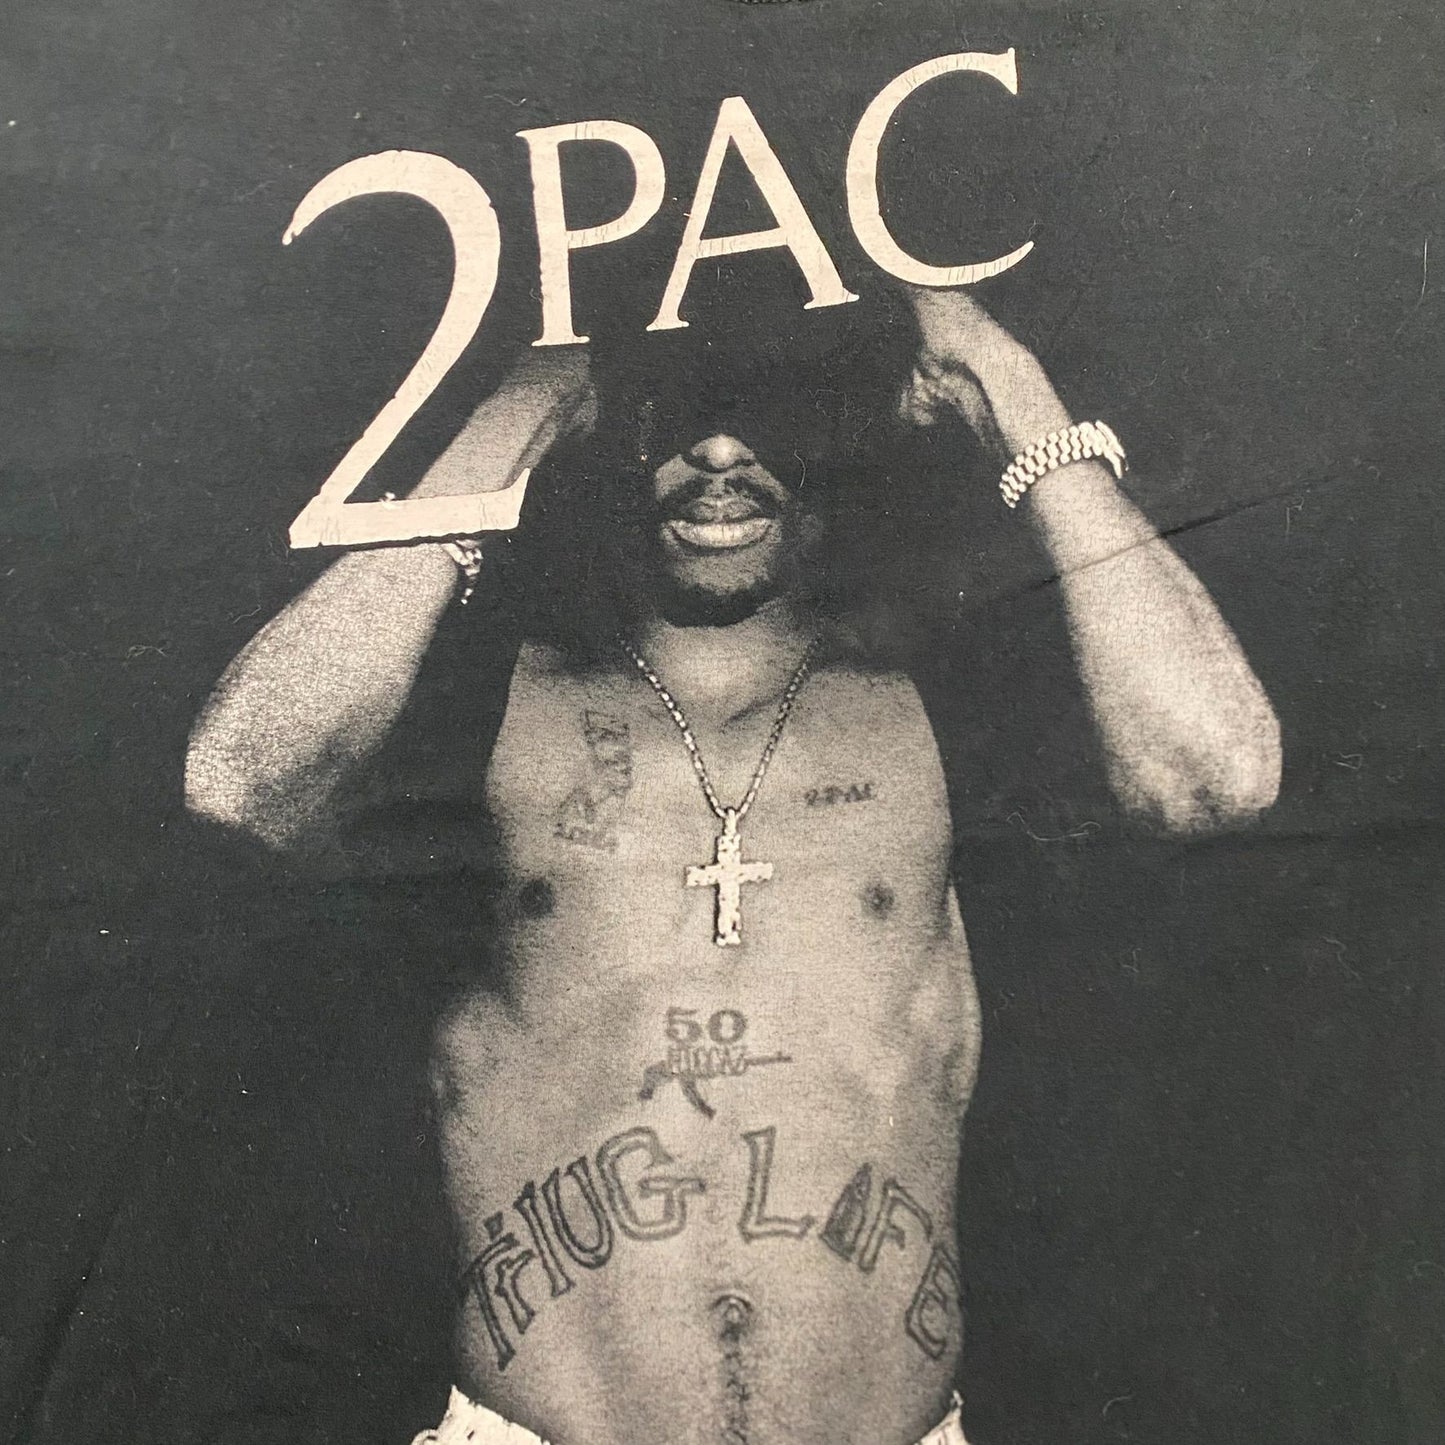 Vintage Y2K Baggy 2PAC Tupac Essential Rap Tee